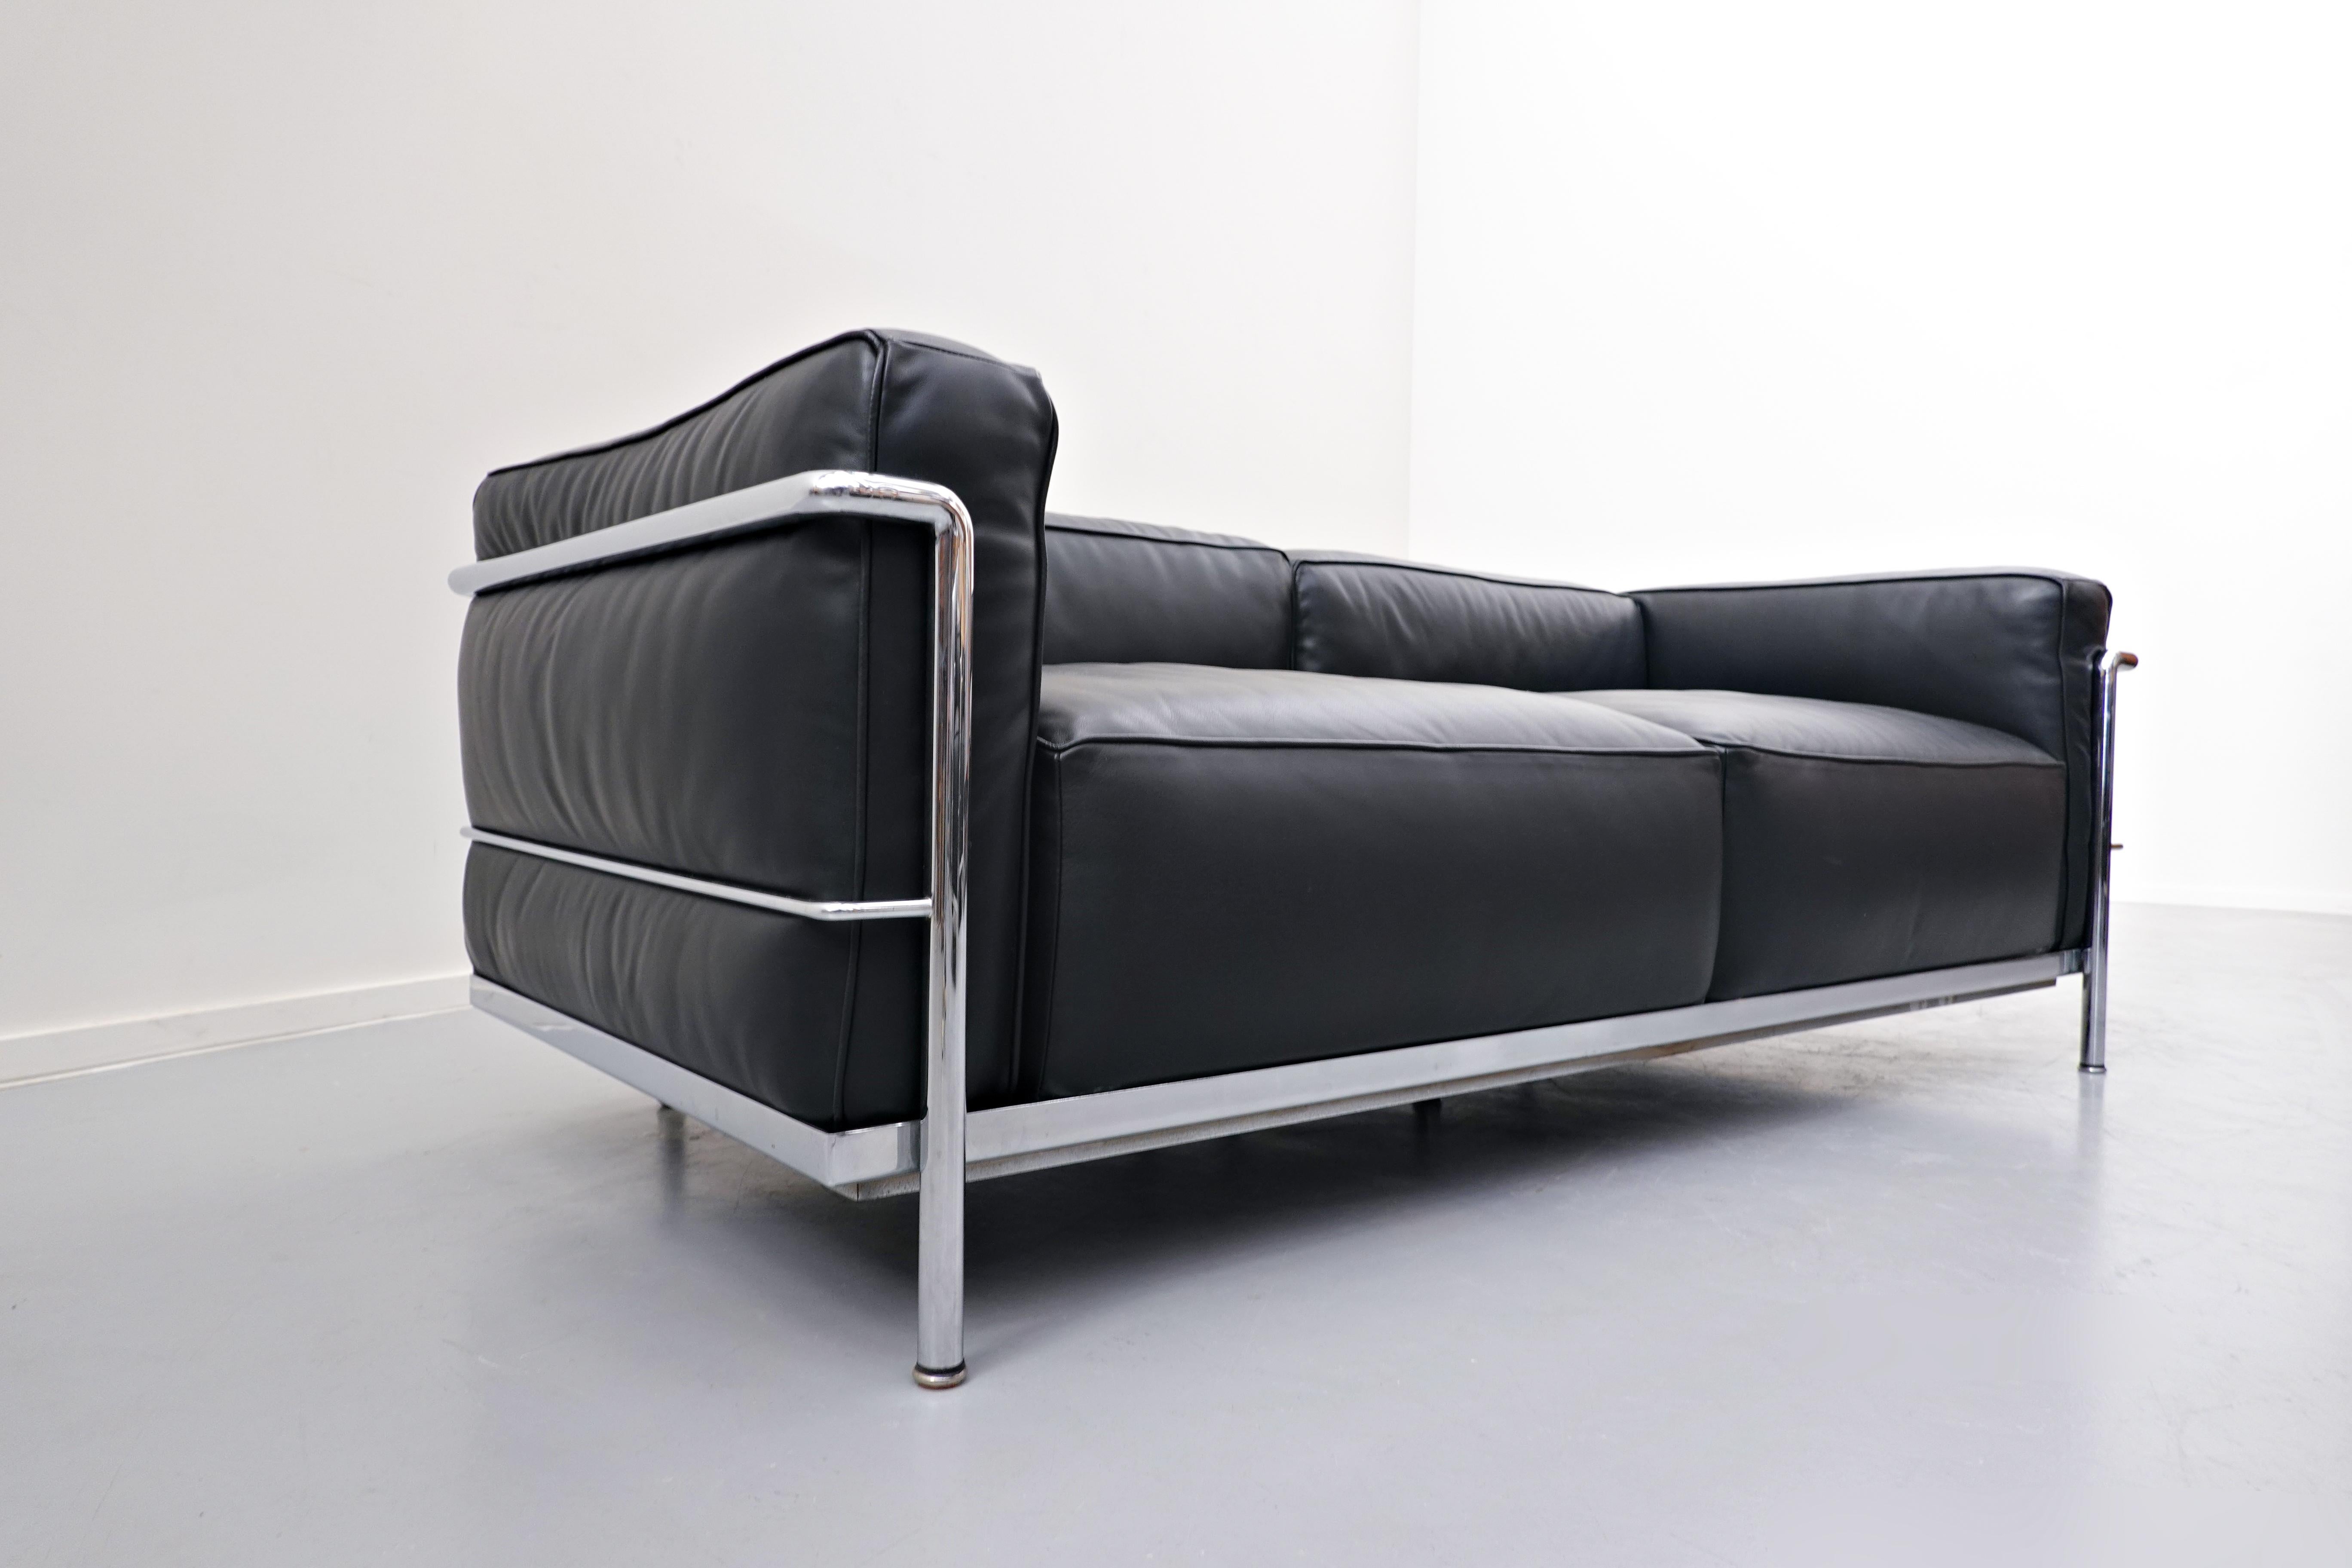 Late 20th Century LC3 Sofa, Le Grand Confort, Le Corbusier for Cassina